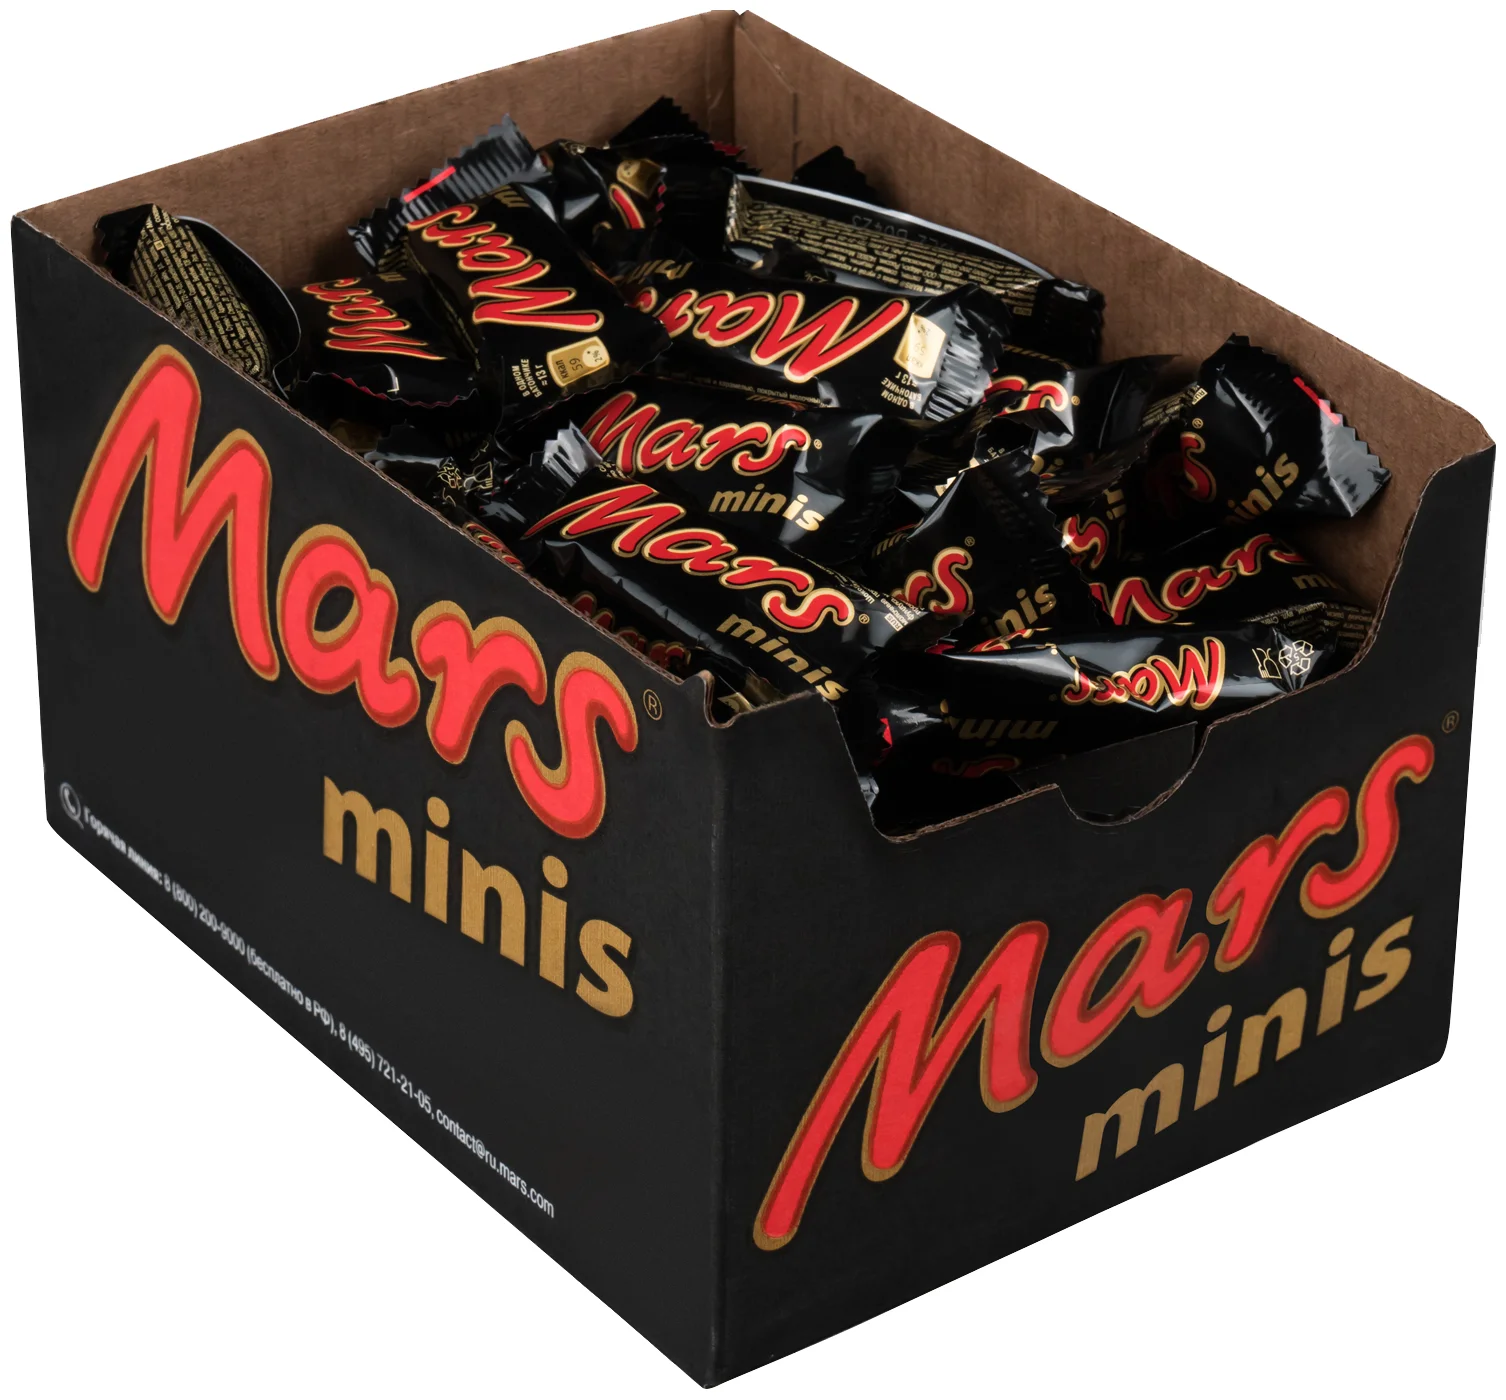 Mars minis - вид конфет: батончики